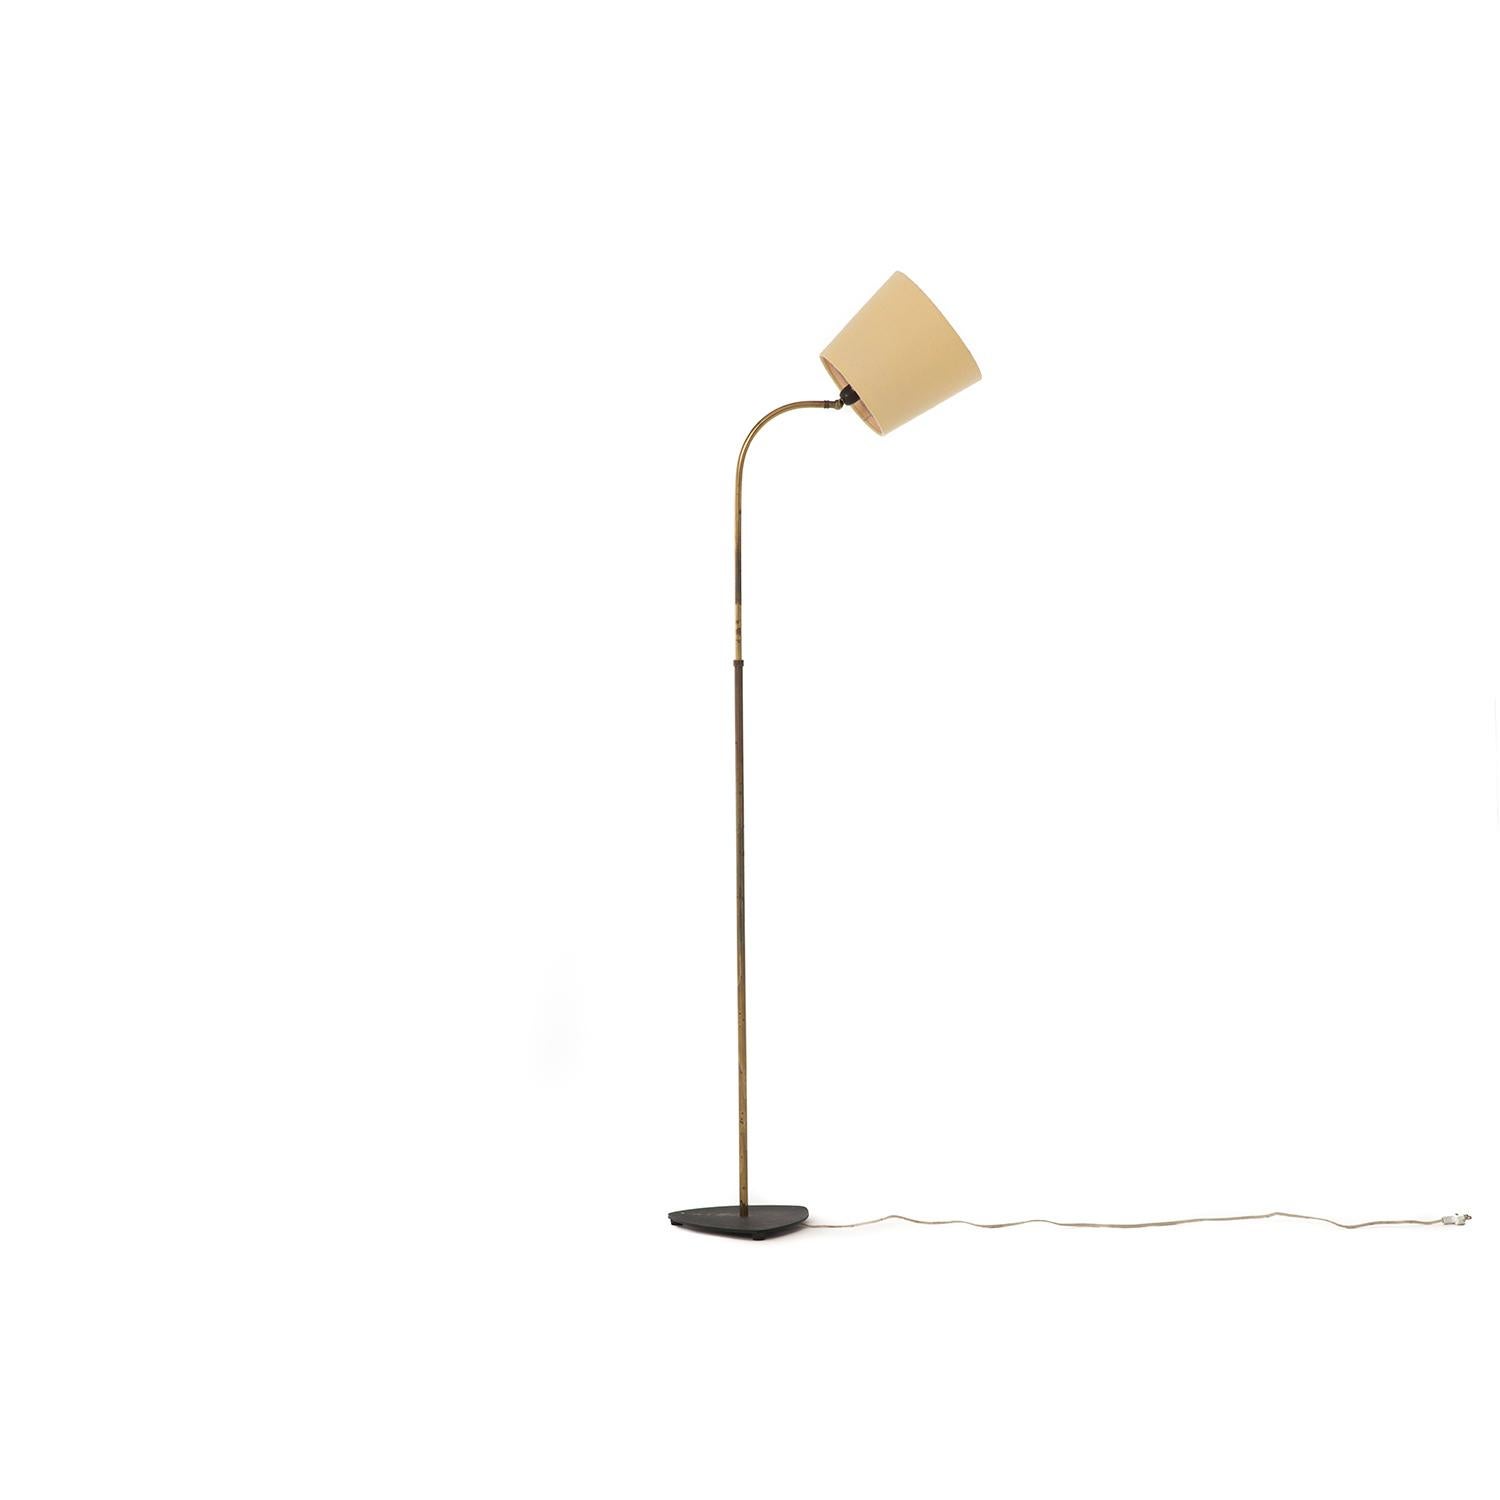 Scandinavian Modern Transitional Era Danish Modern Floor Lamp with Bonnet Shade